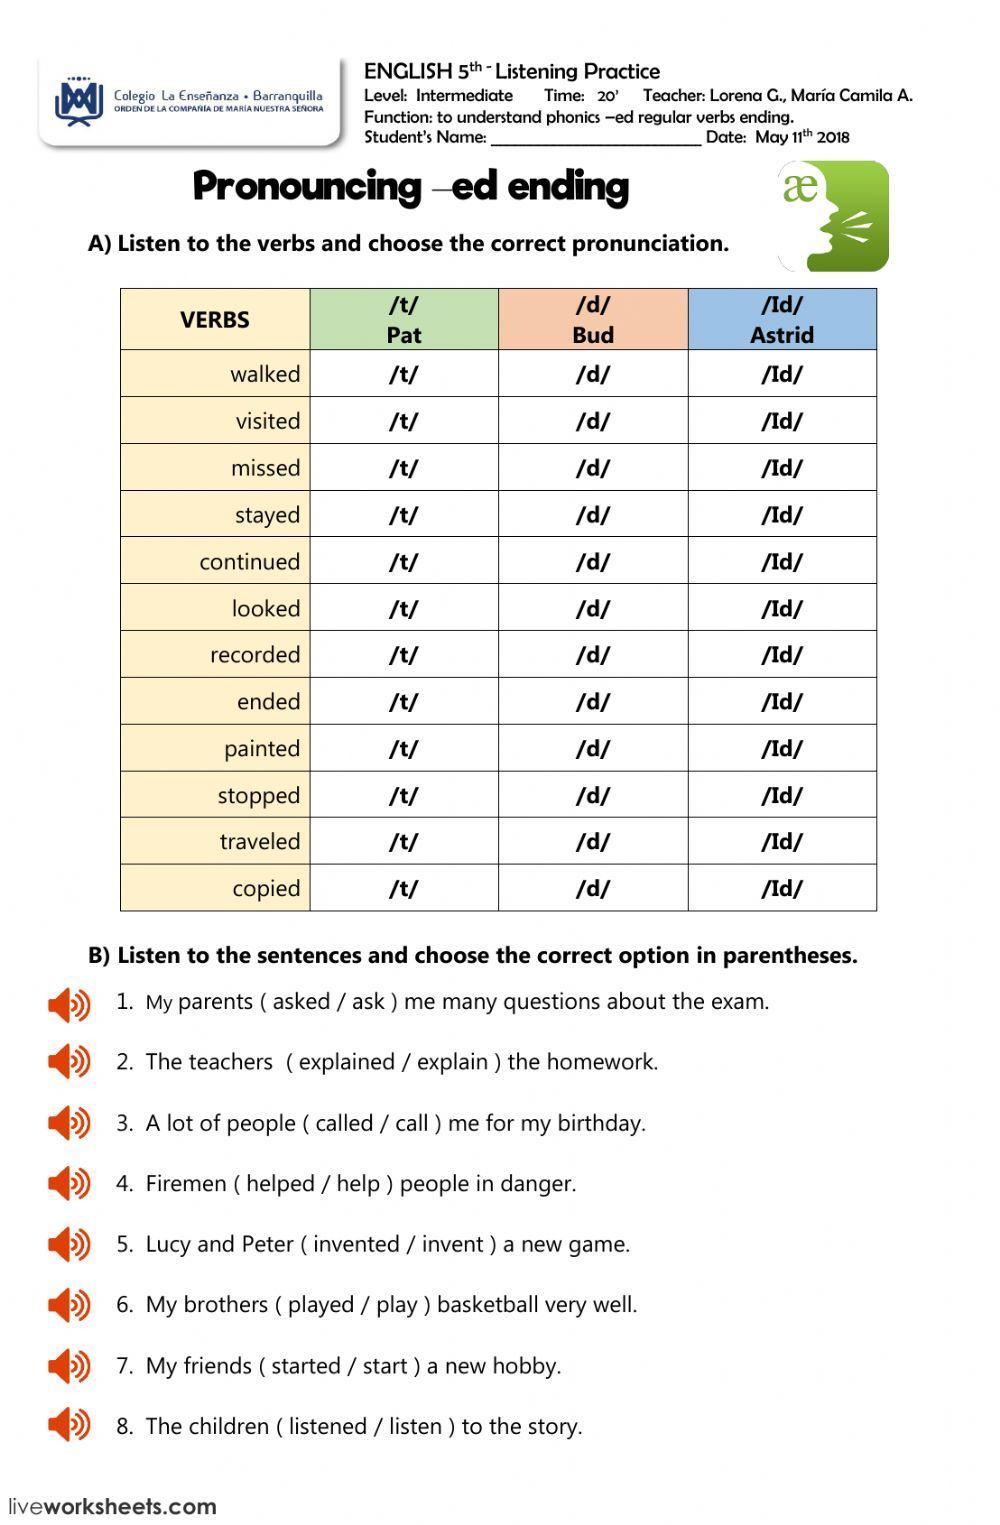 Pronunciation regular verbs -ed ending worksheet | Live Worksheets